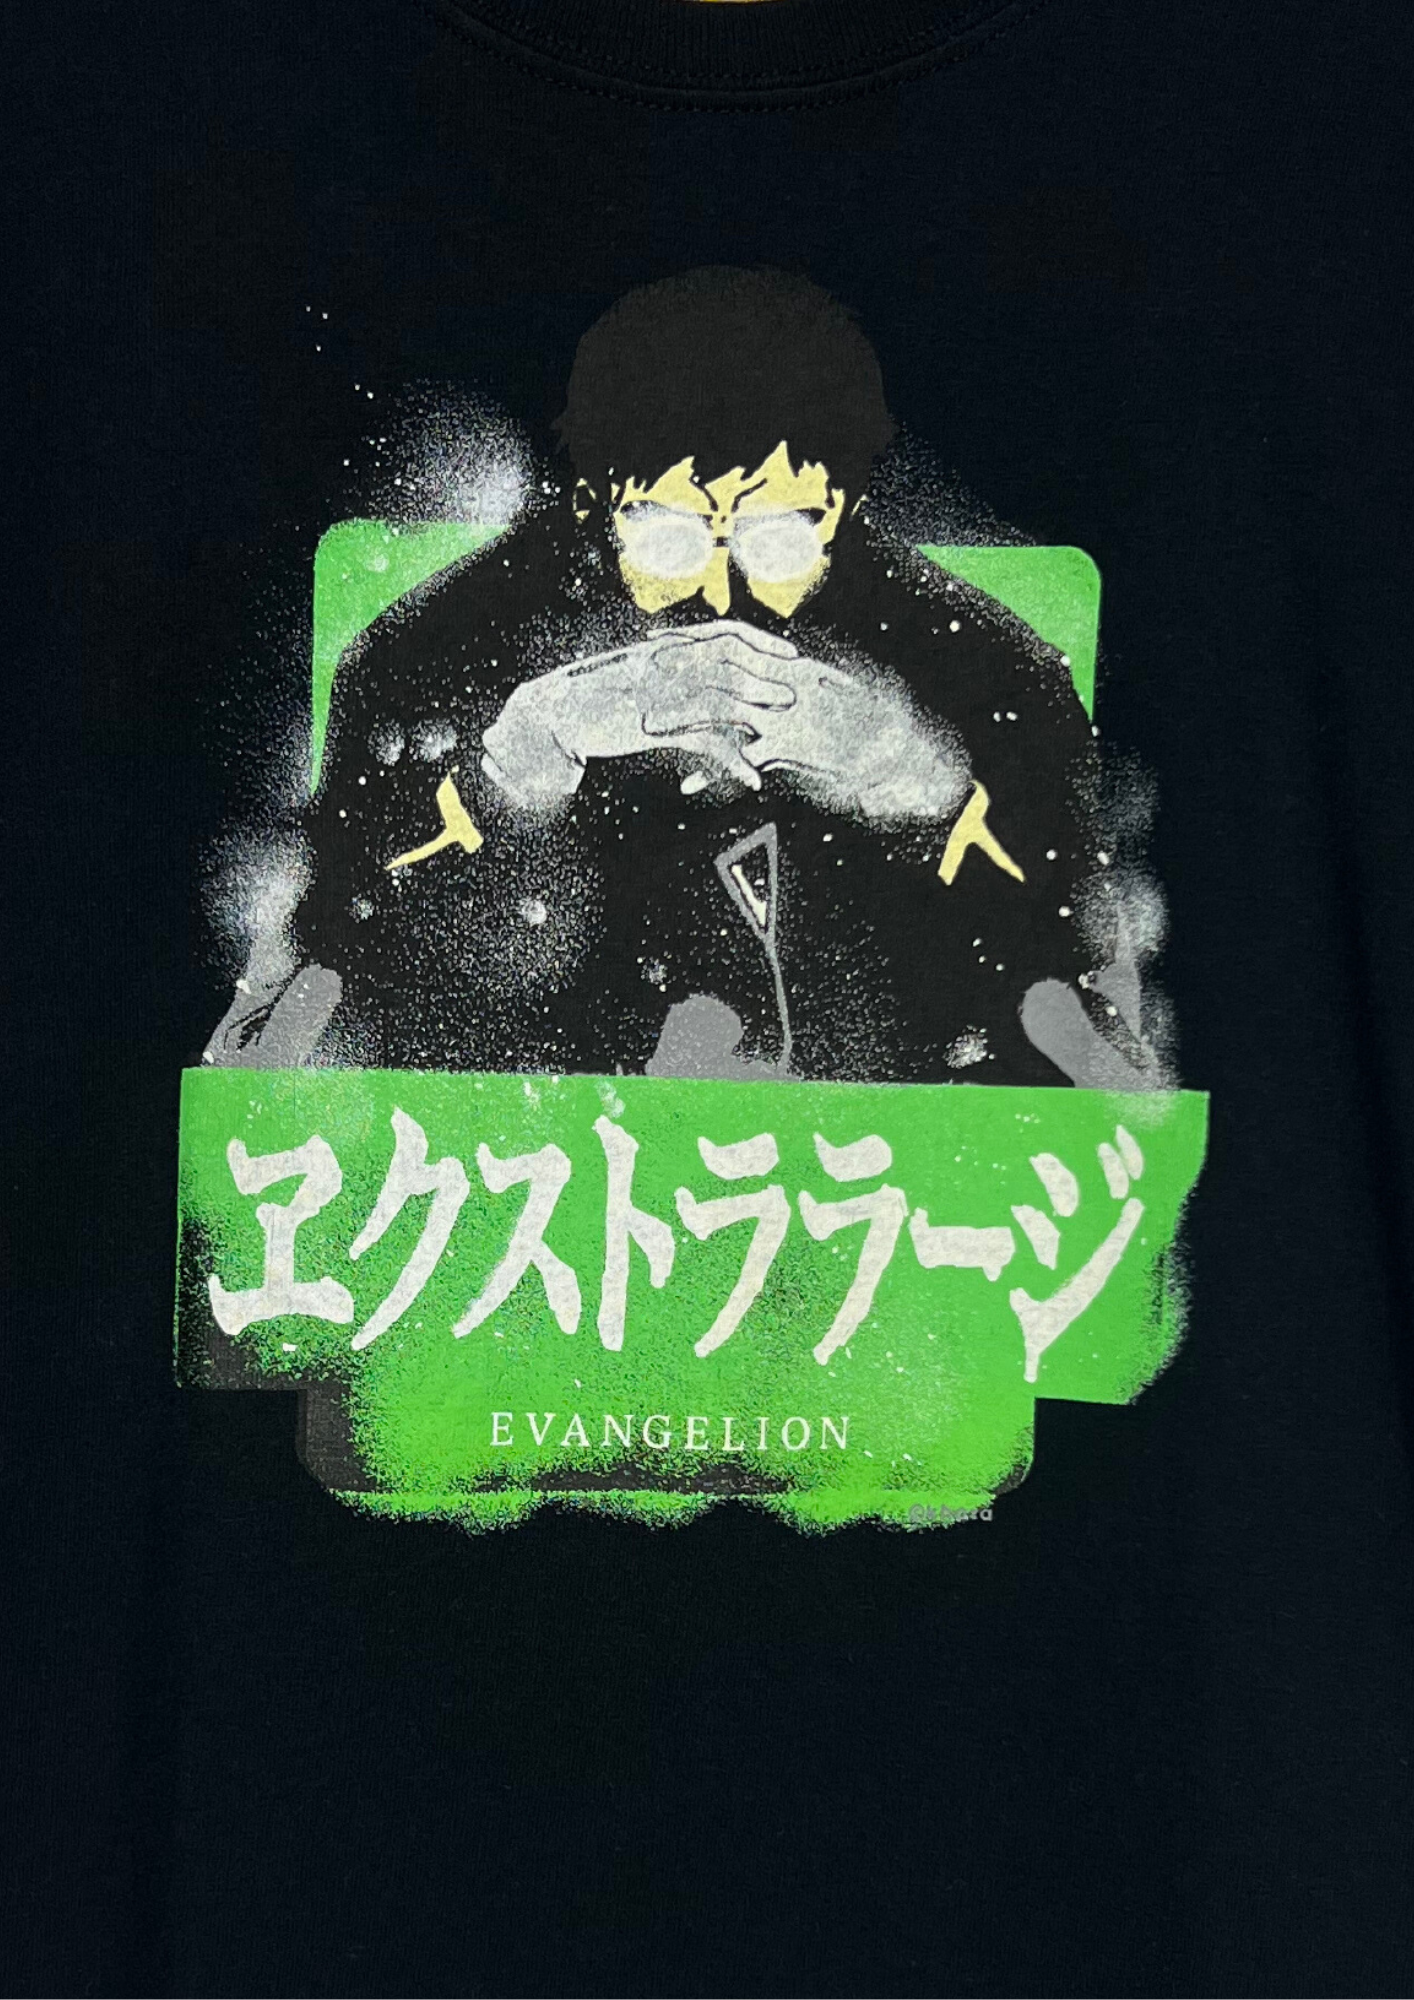 Neon Genesis Evangelion x X-Large Gendo Ikari T-shirt